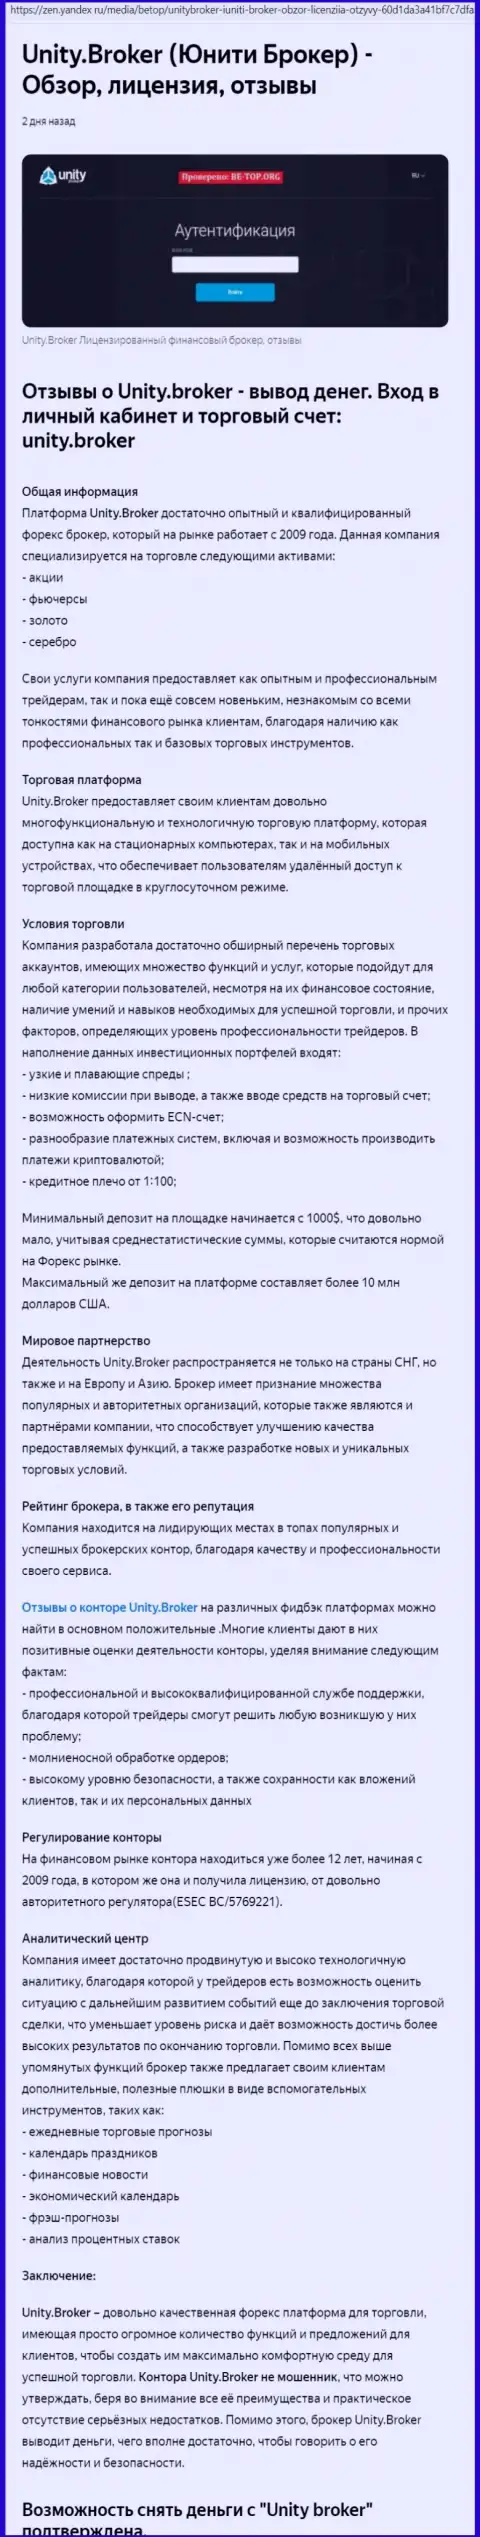 Обзор Форекс дилингового центра Unity Broker на информационном ресурсе Яндекс Дзен